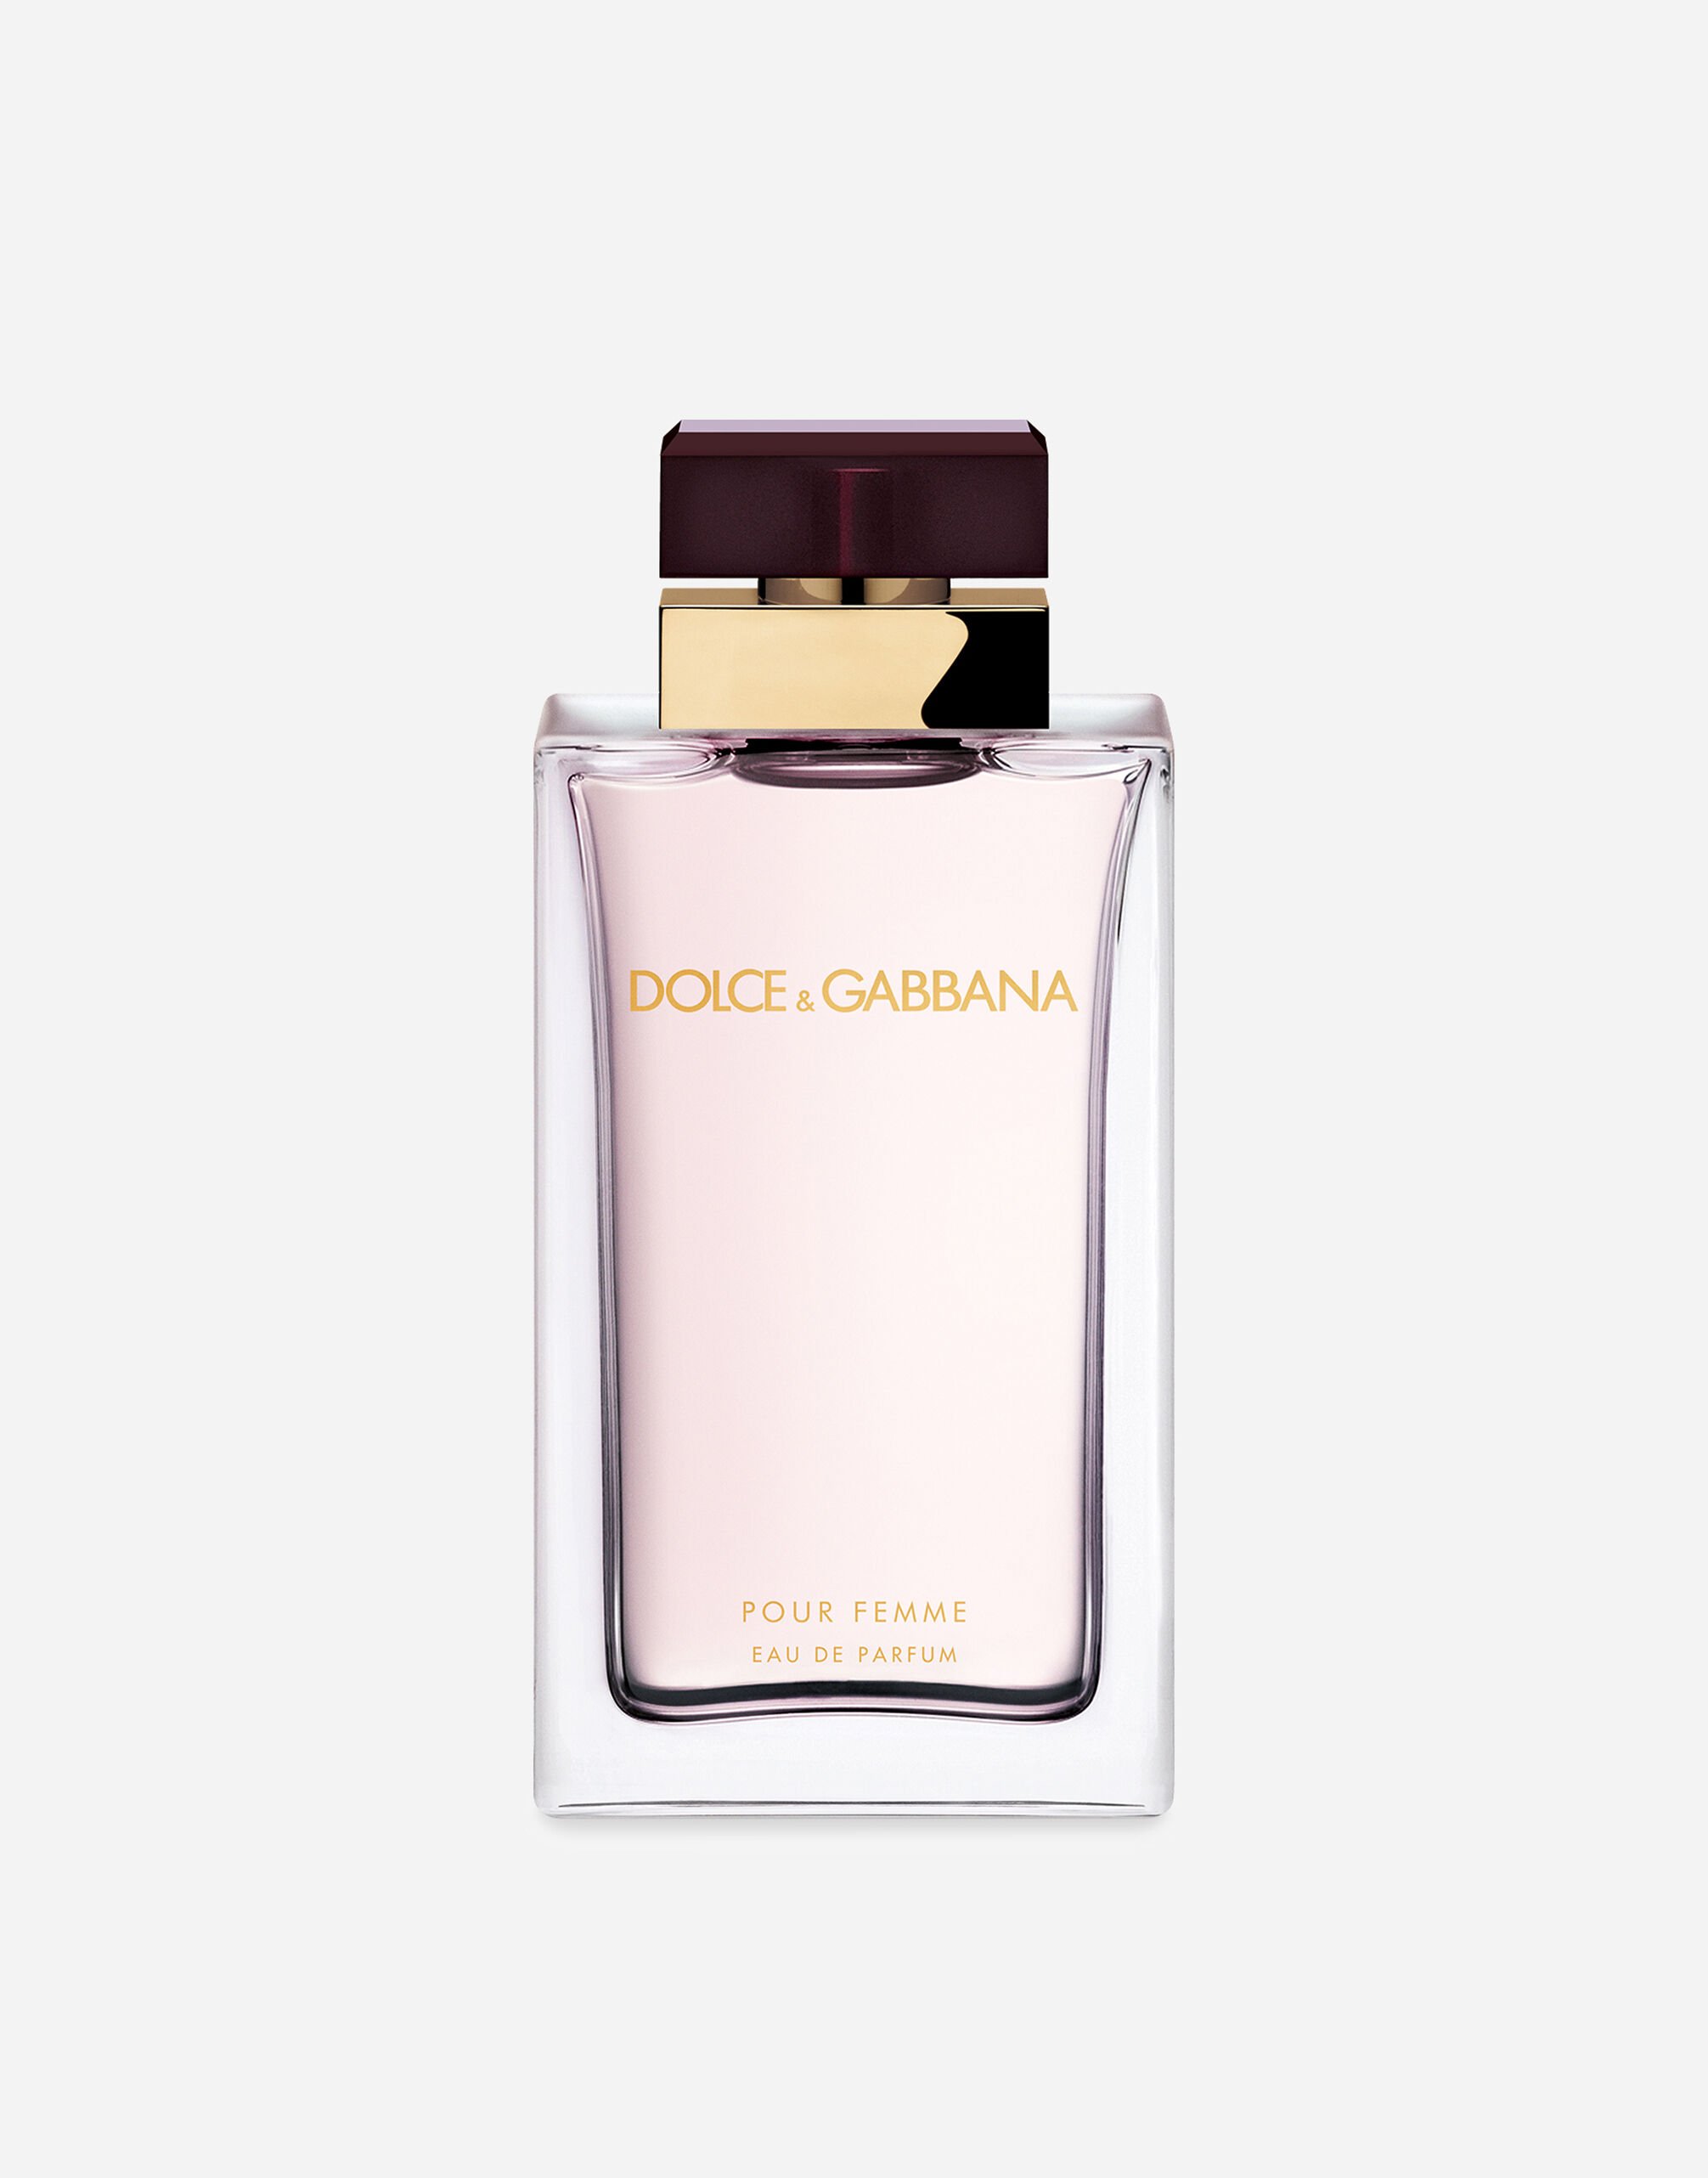 Dolce & Gabbana Pour Femme Eau de Parfum - VP6974VP243